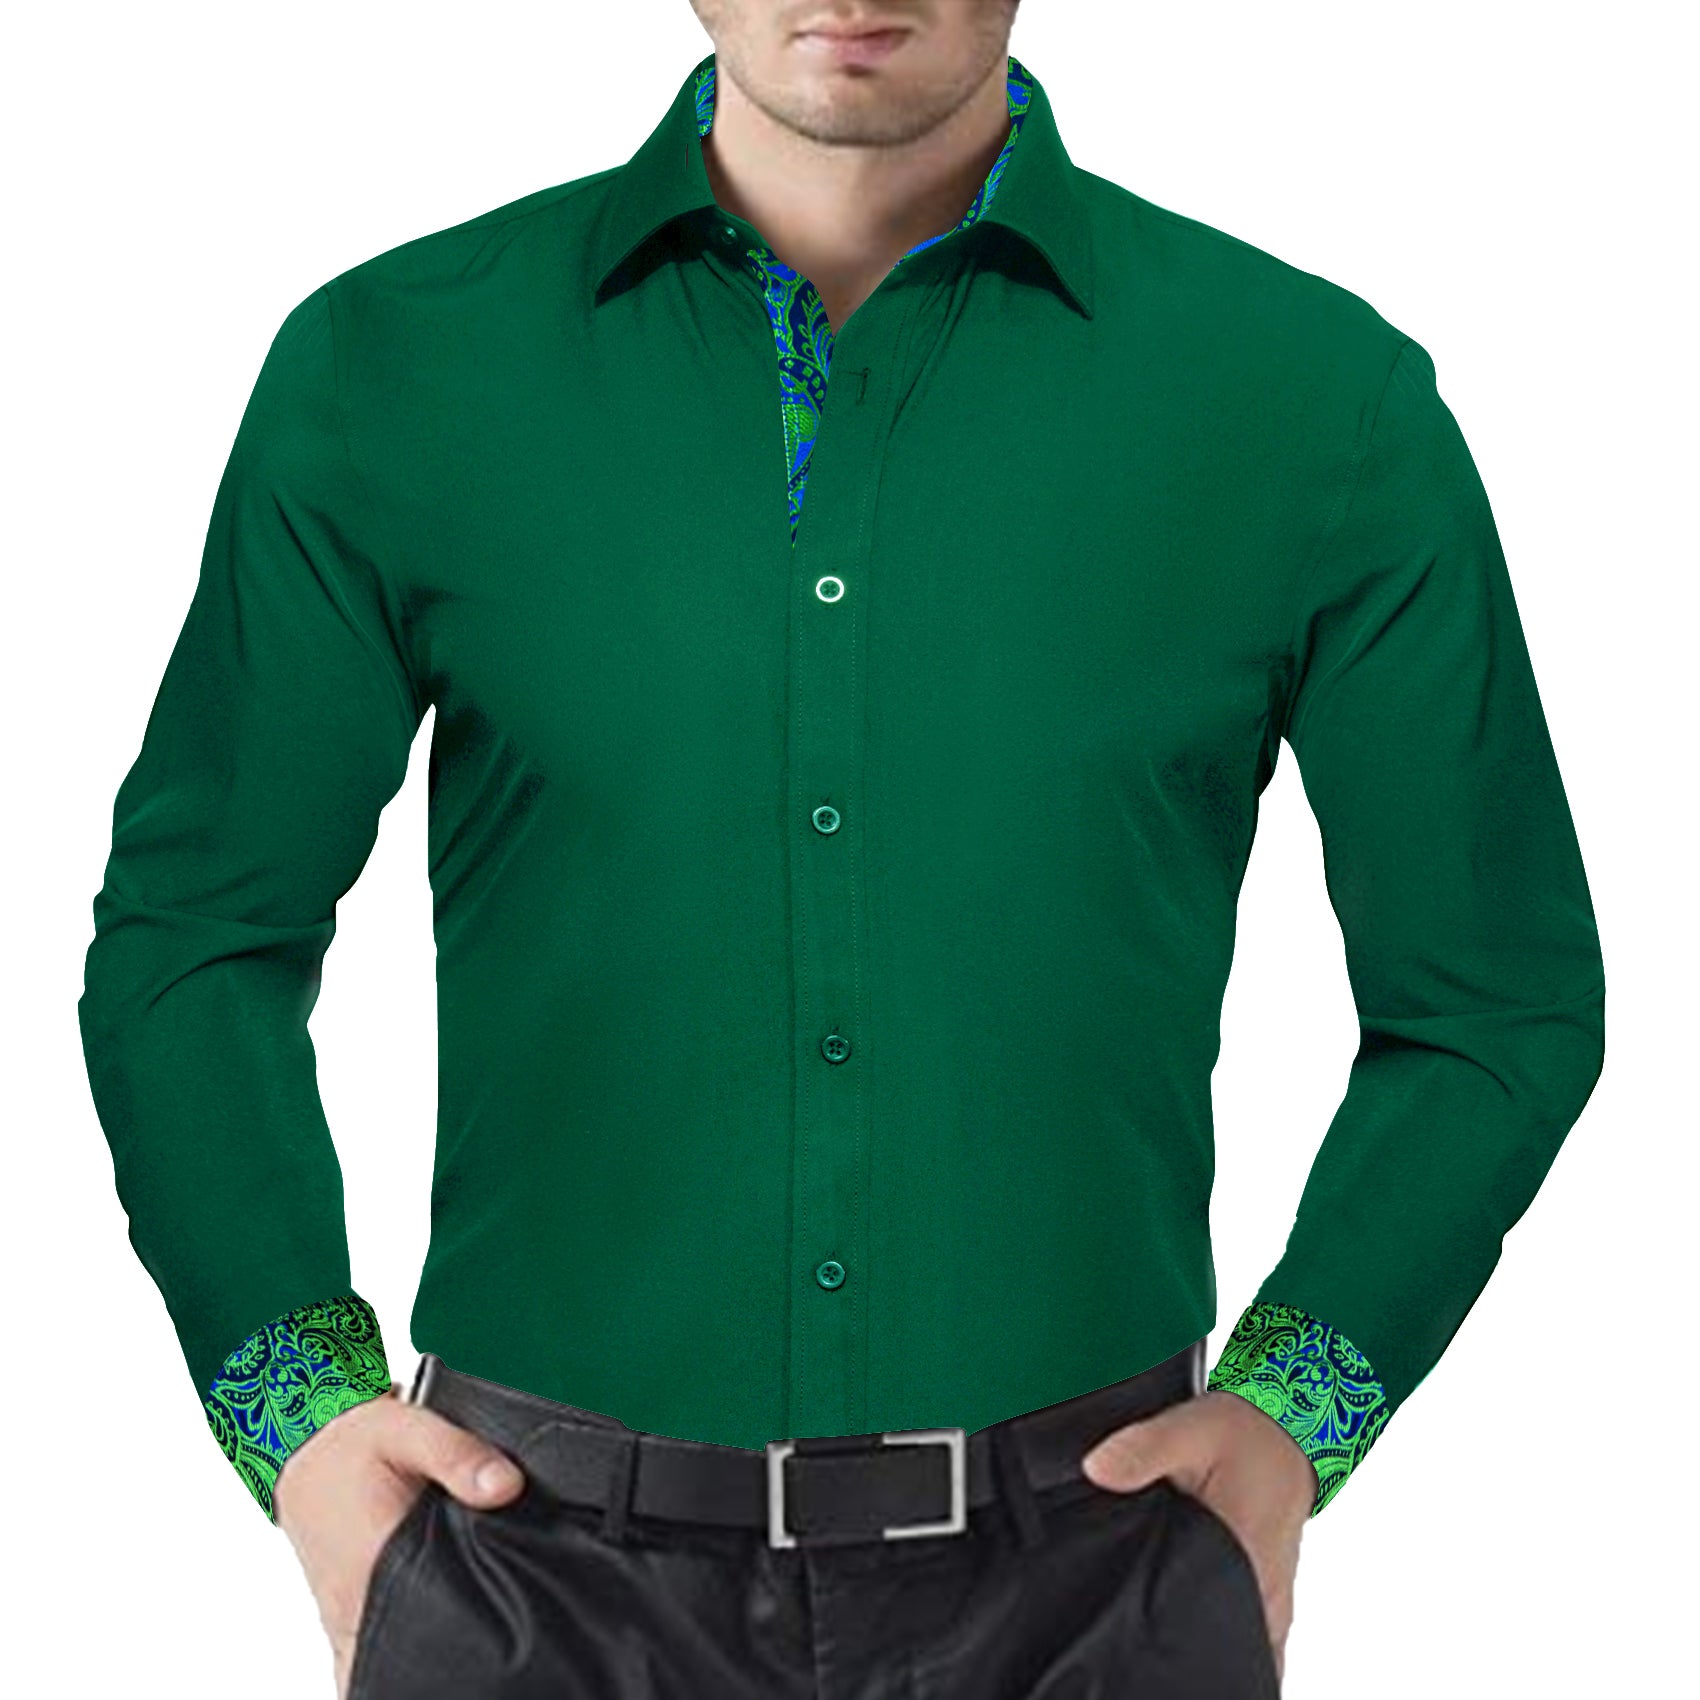 Barry.wang Formal Green Splicing Men's Business Shirt